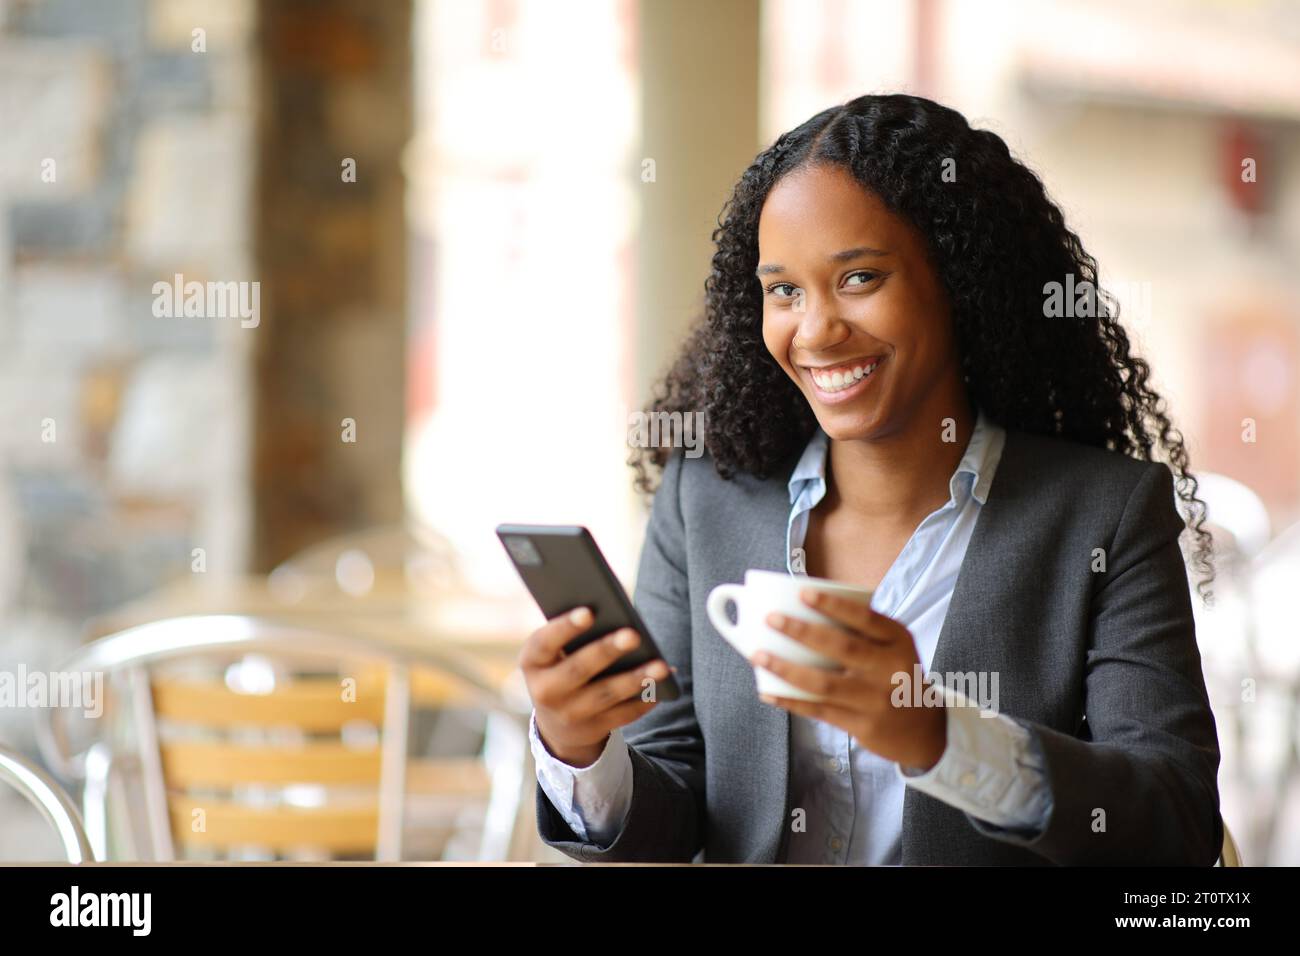 Glücklicher schwarzer Manager mit Smartphone und Kaffeetasse, der in einem Restaurant in die Kamera blickt Stockfoto